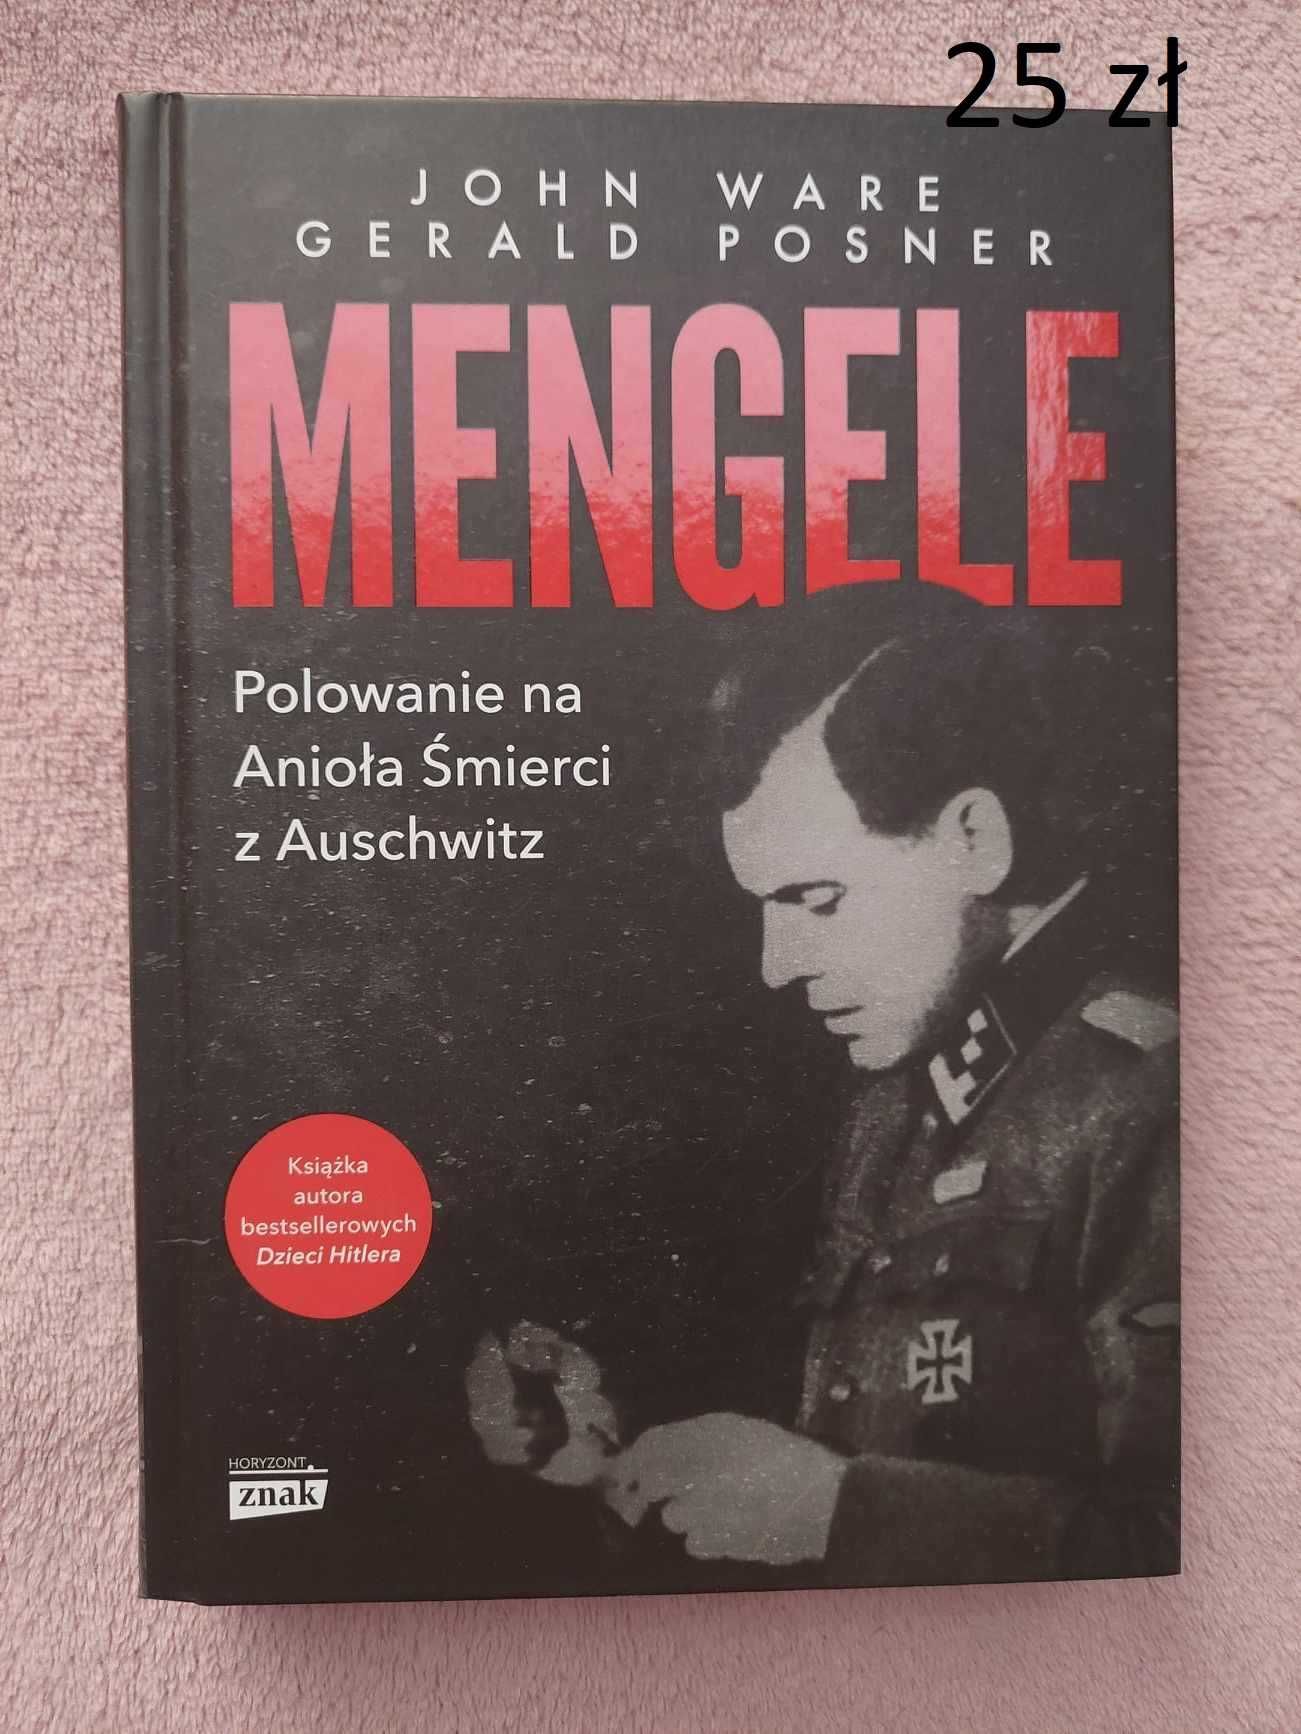 Mengele. Polowanie na Anioła Śmierci w Auschwitz